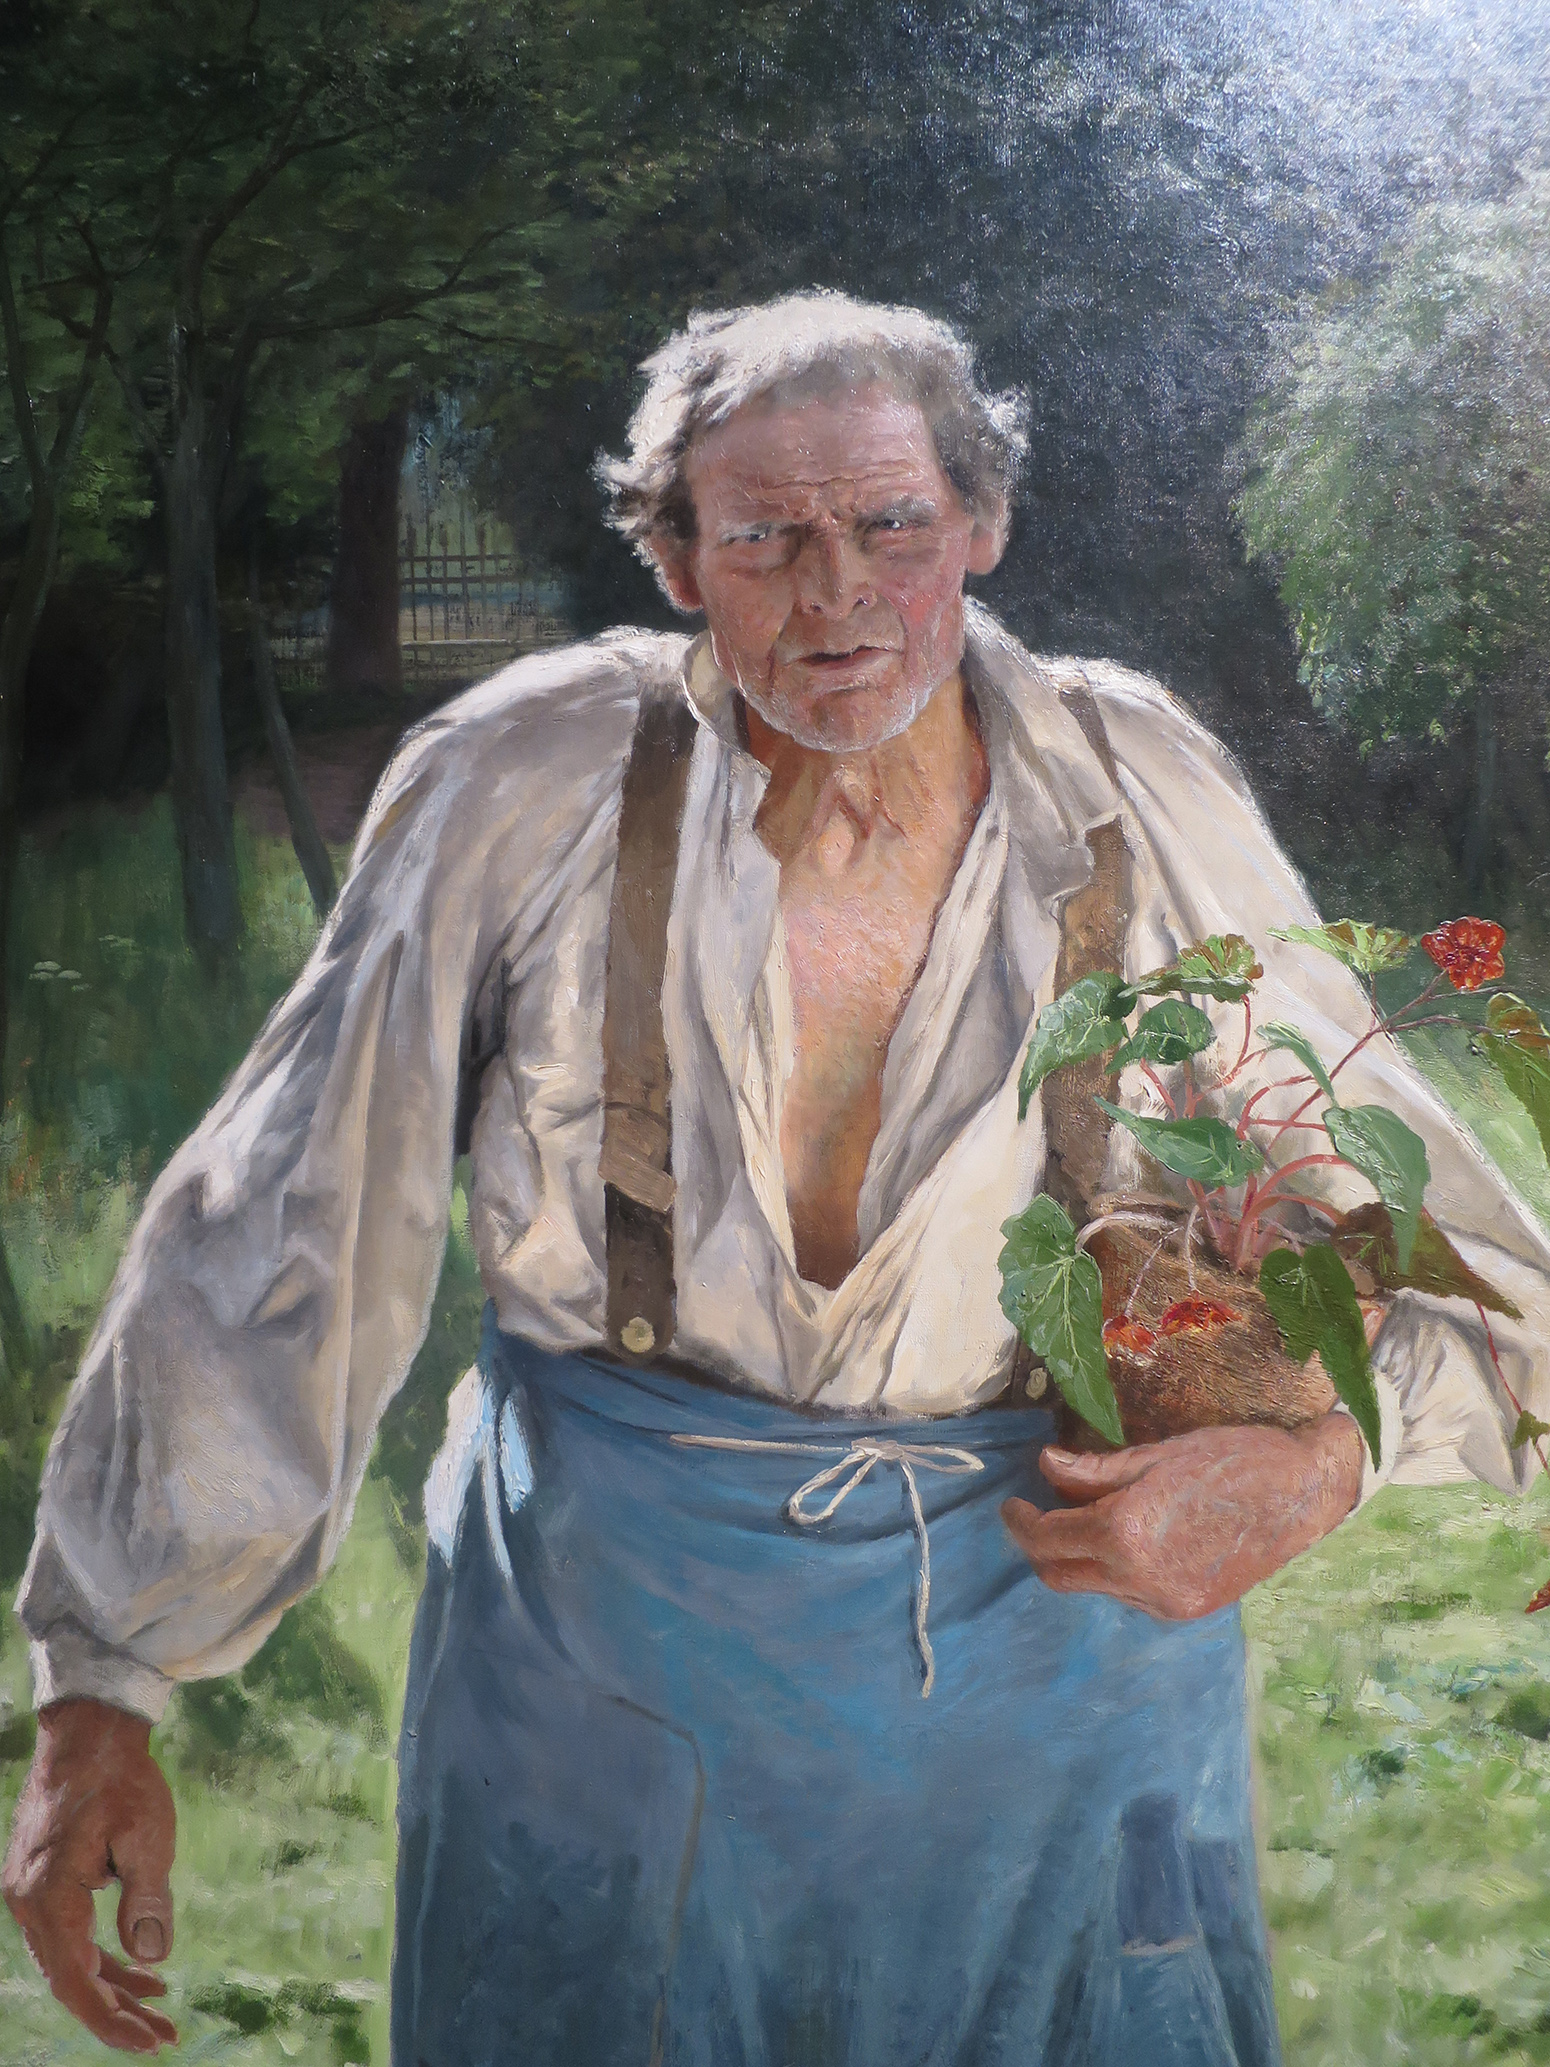 Homme âgé dans un jardin, un pot de fleur dans ses bras